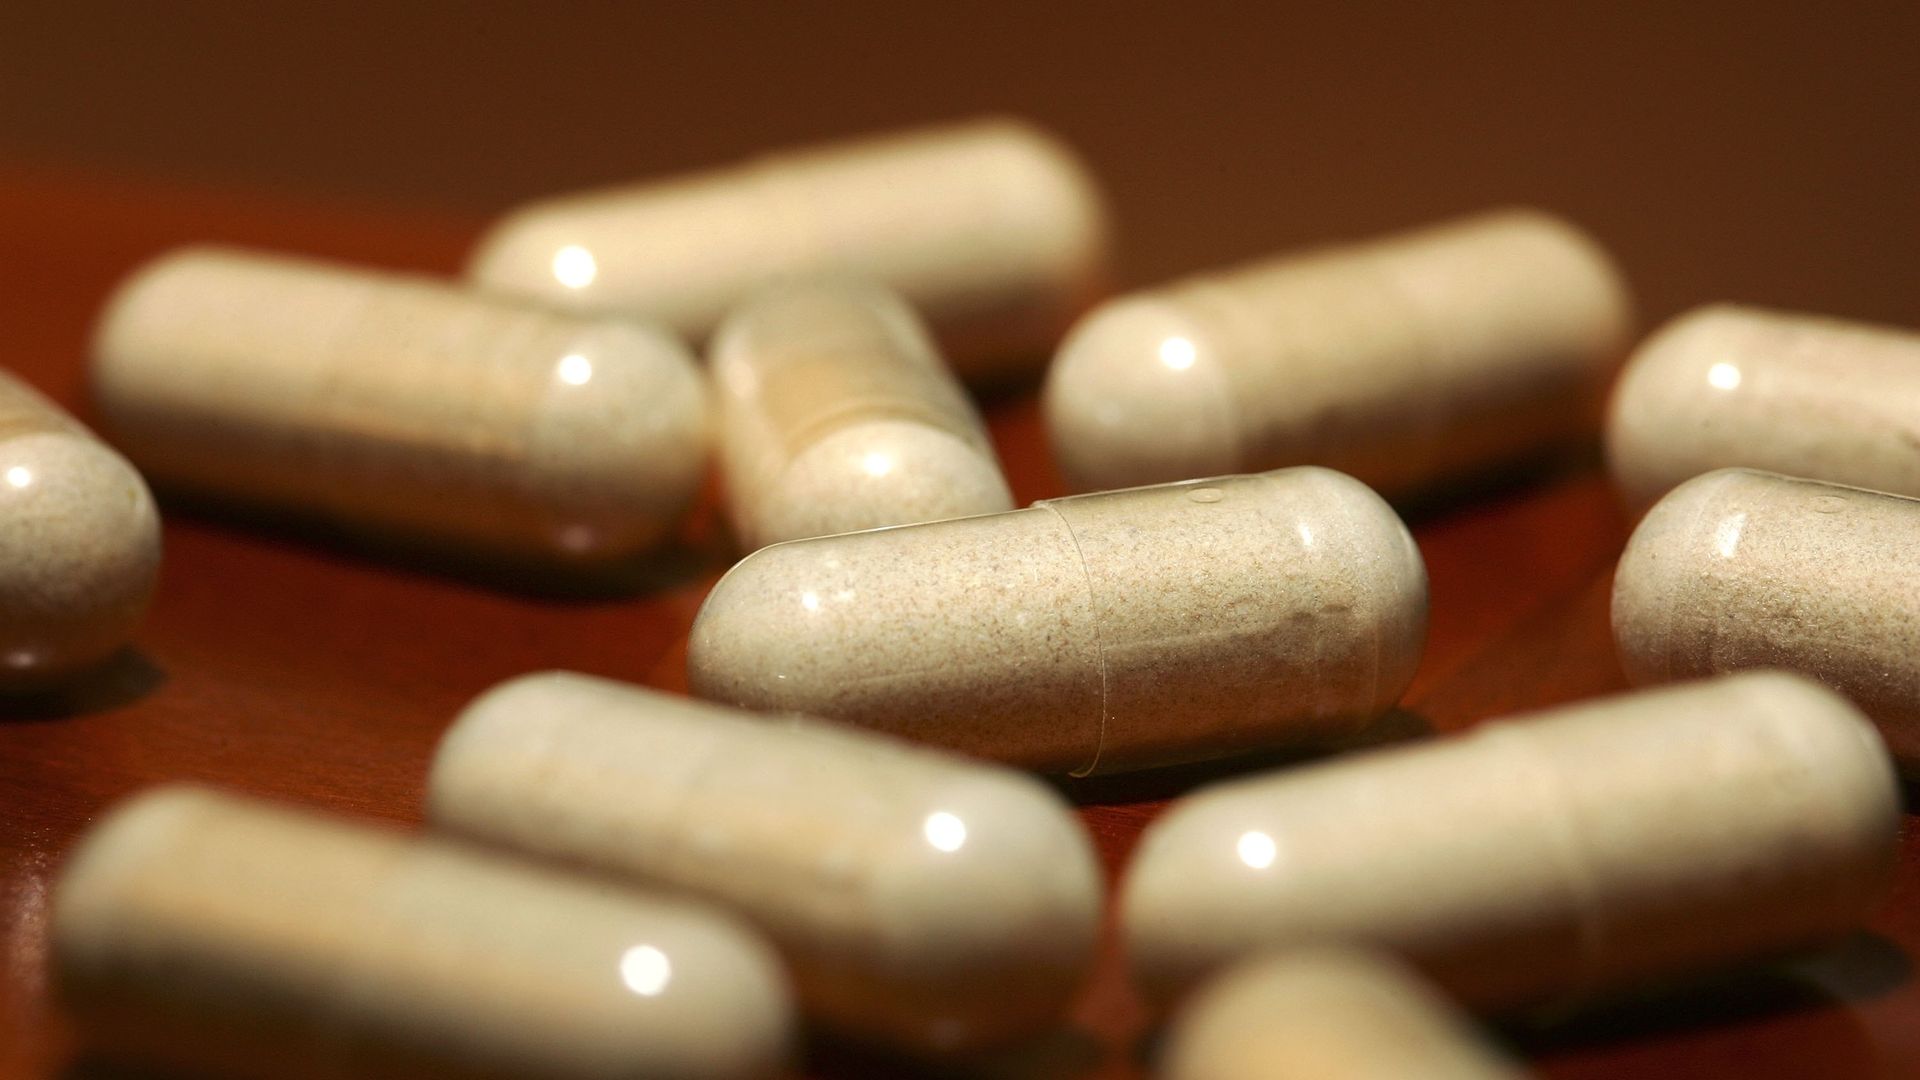 A close-up of pills.